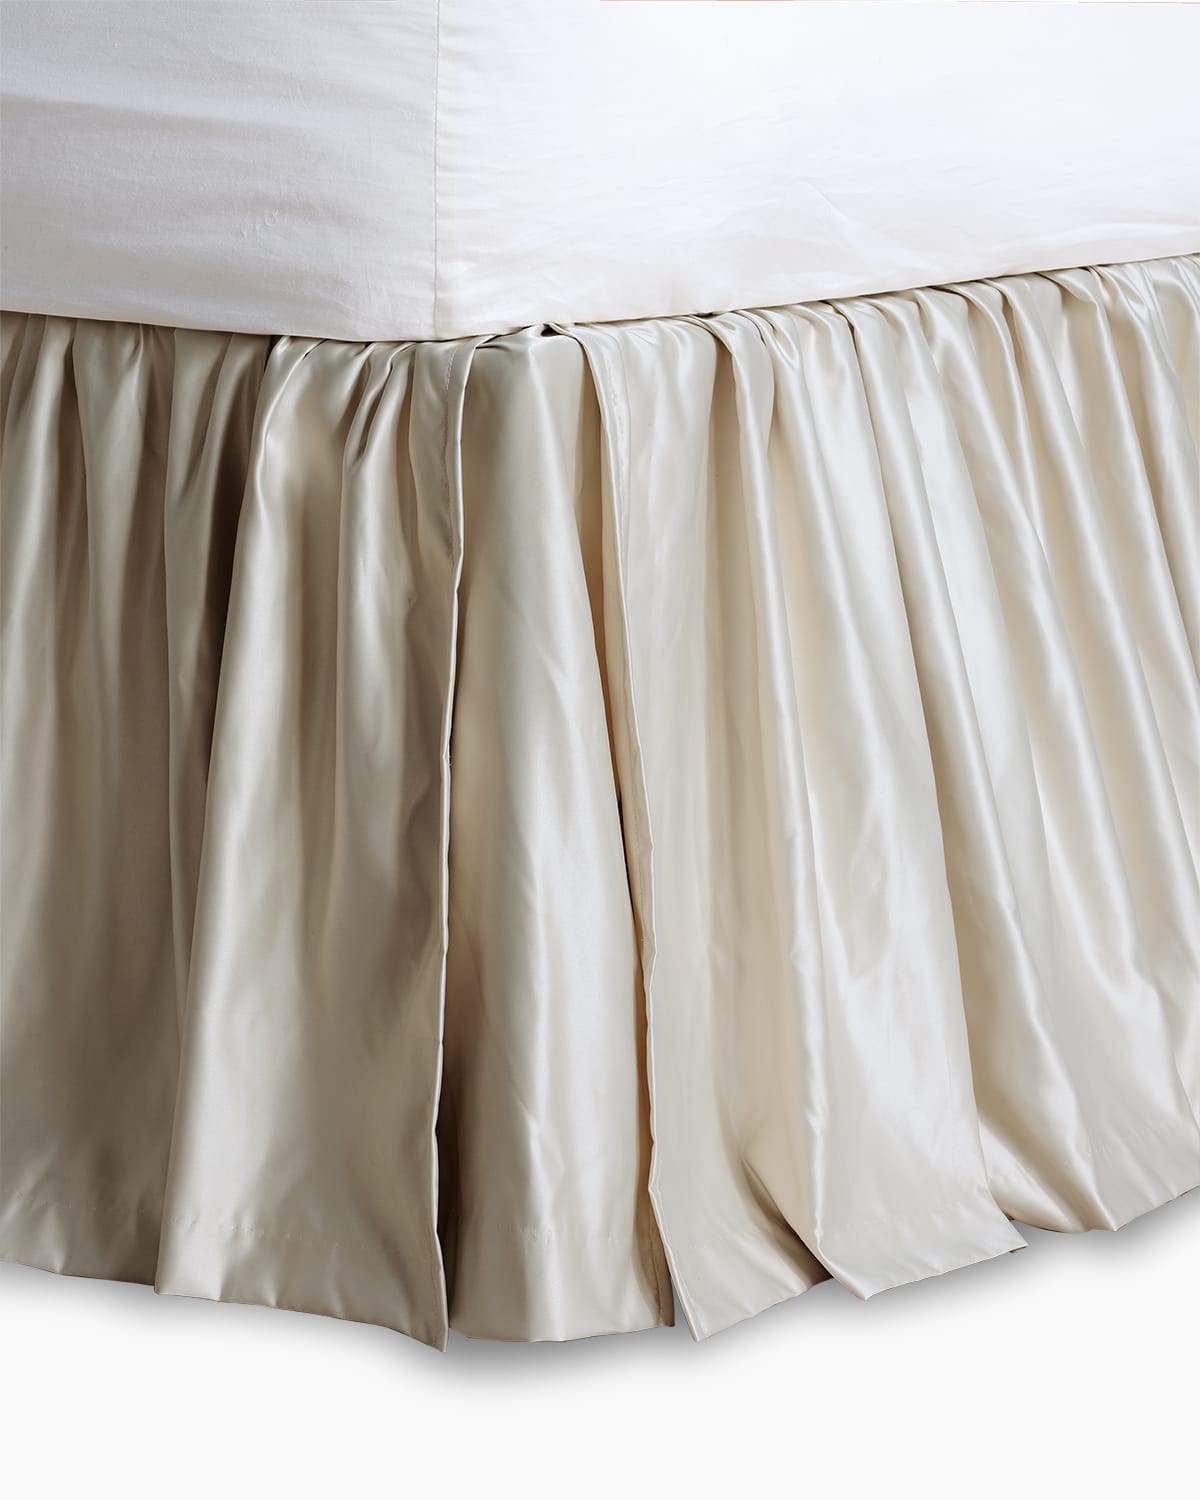 Eastern Accents Jolene Queen Bed Skirt In Cream